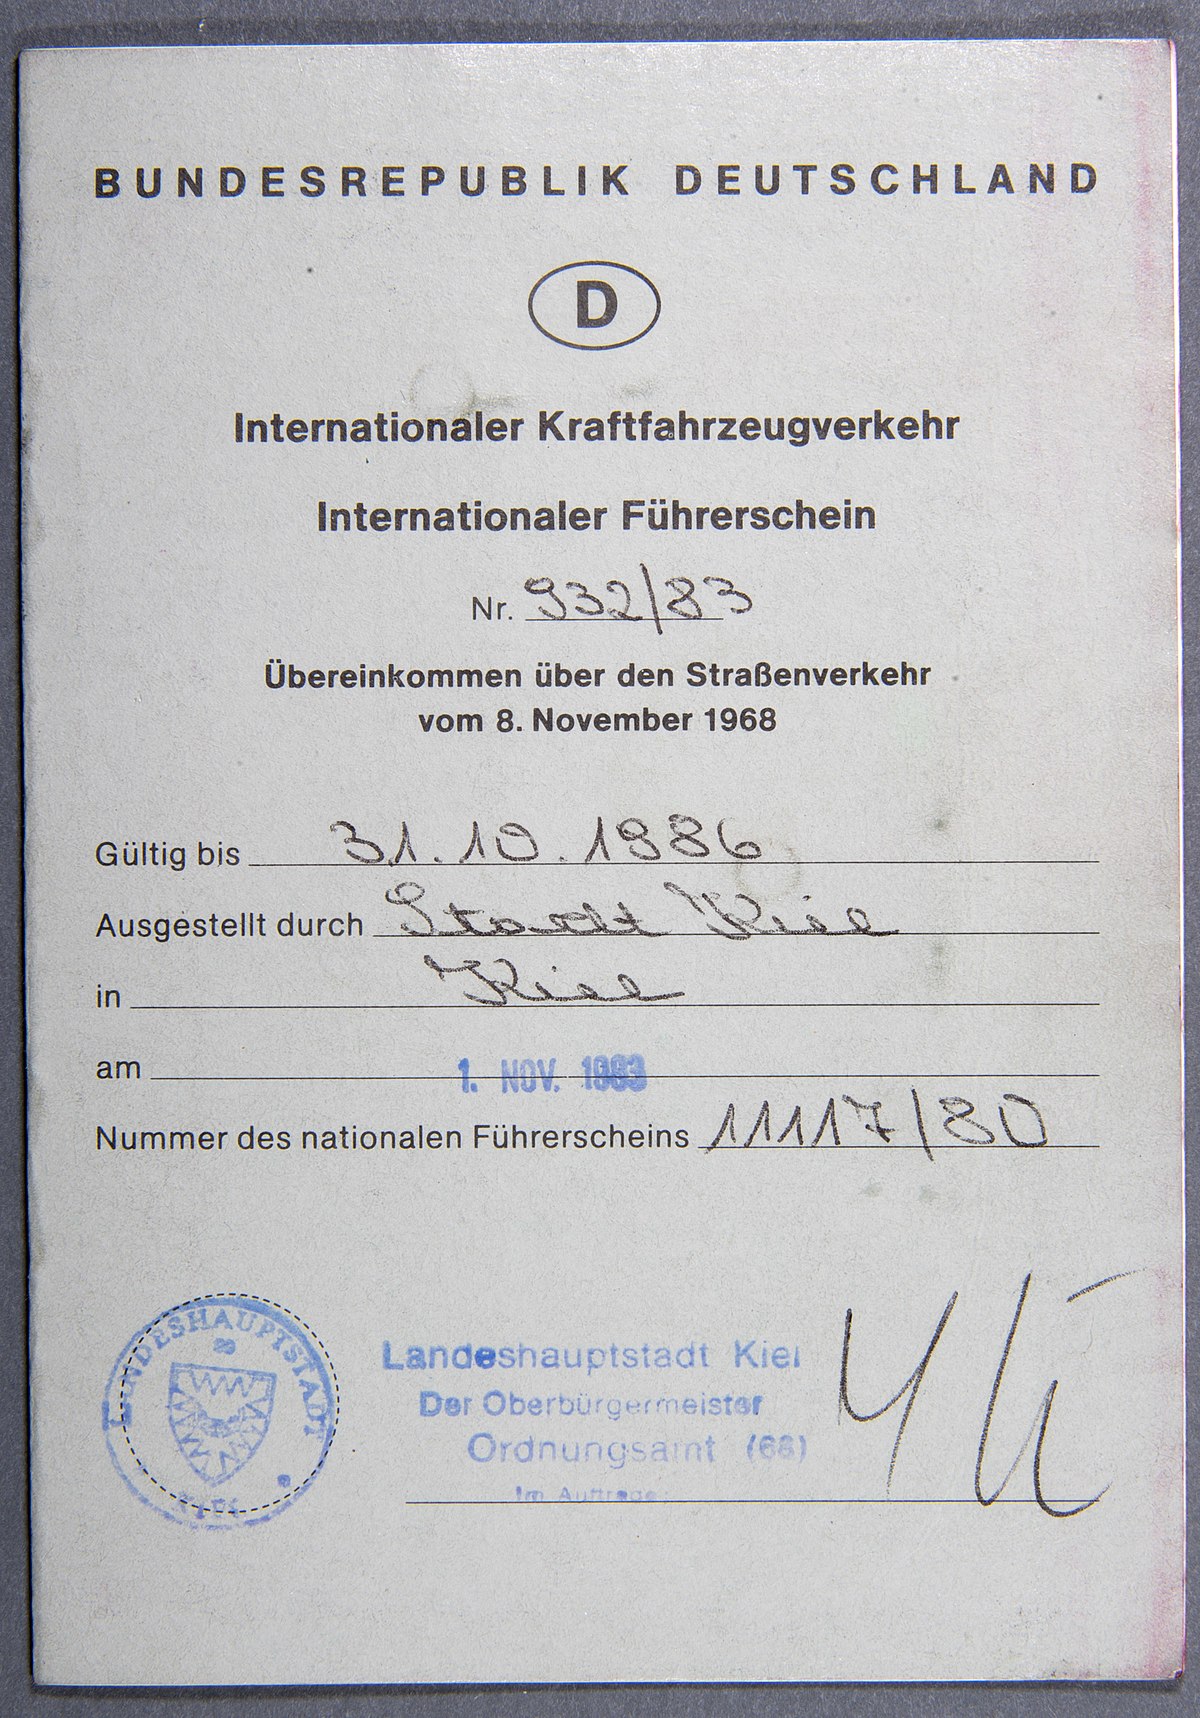 File:Internationaler fuehrerschein.jpg - Wikimedia Commons